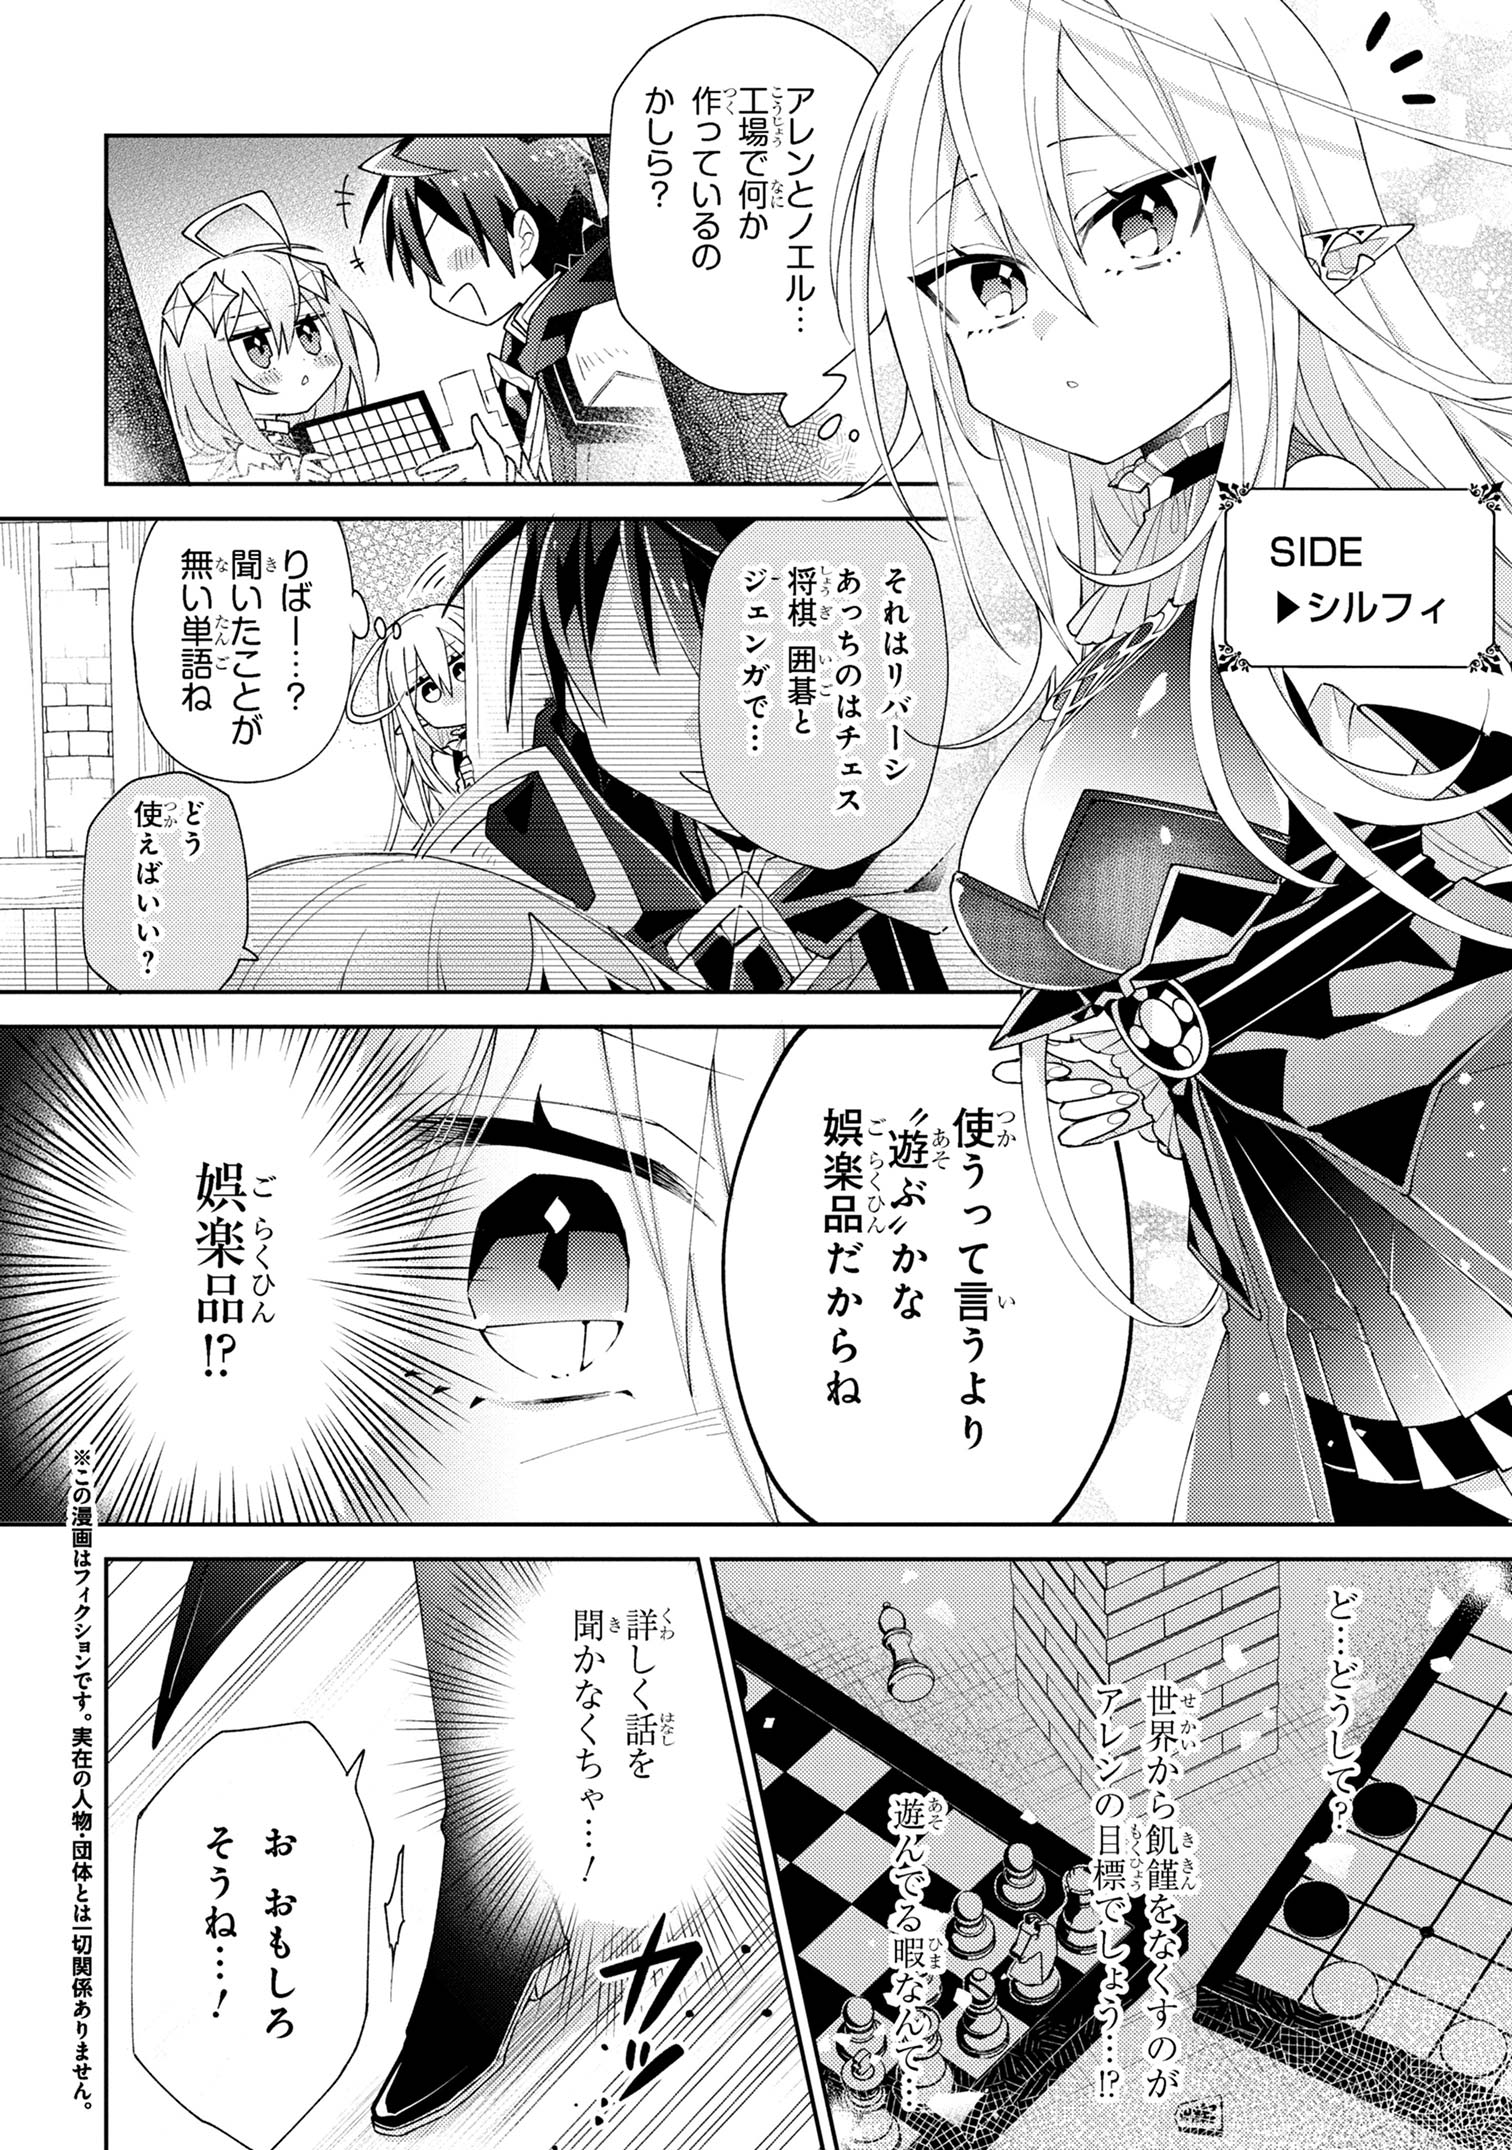 Dorei kara no Kitai to Hyouka no Sei de Sakushu Dekinai no da ga - Chapter 5 - Page 2